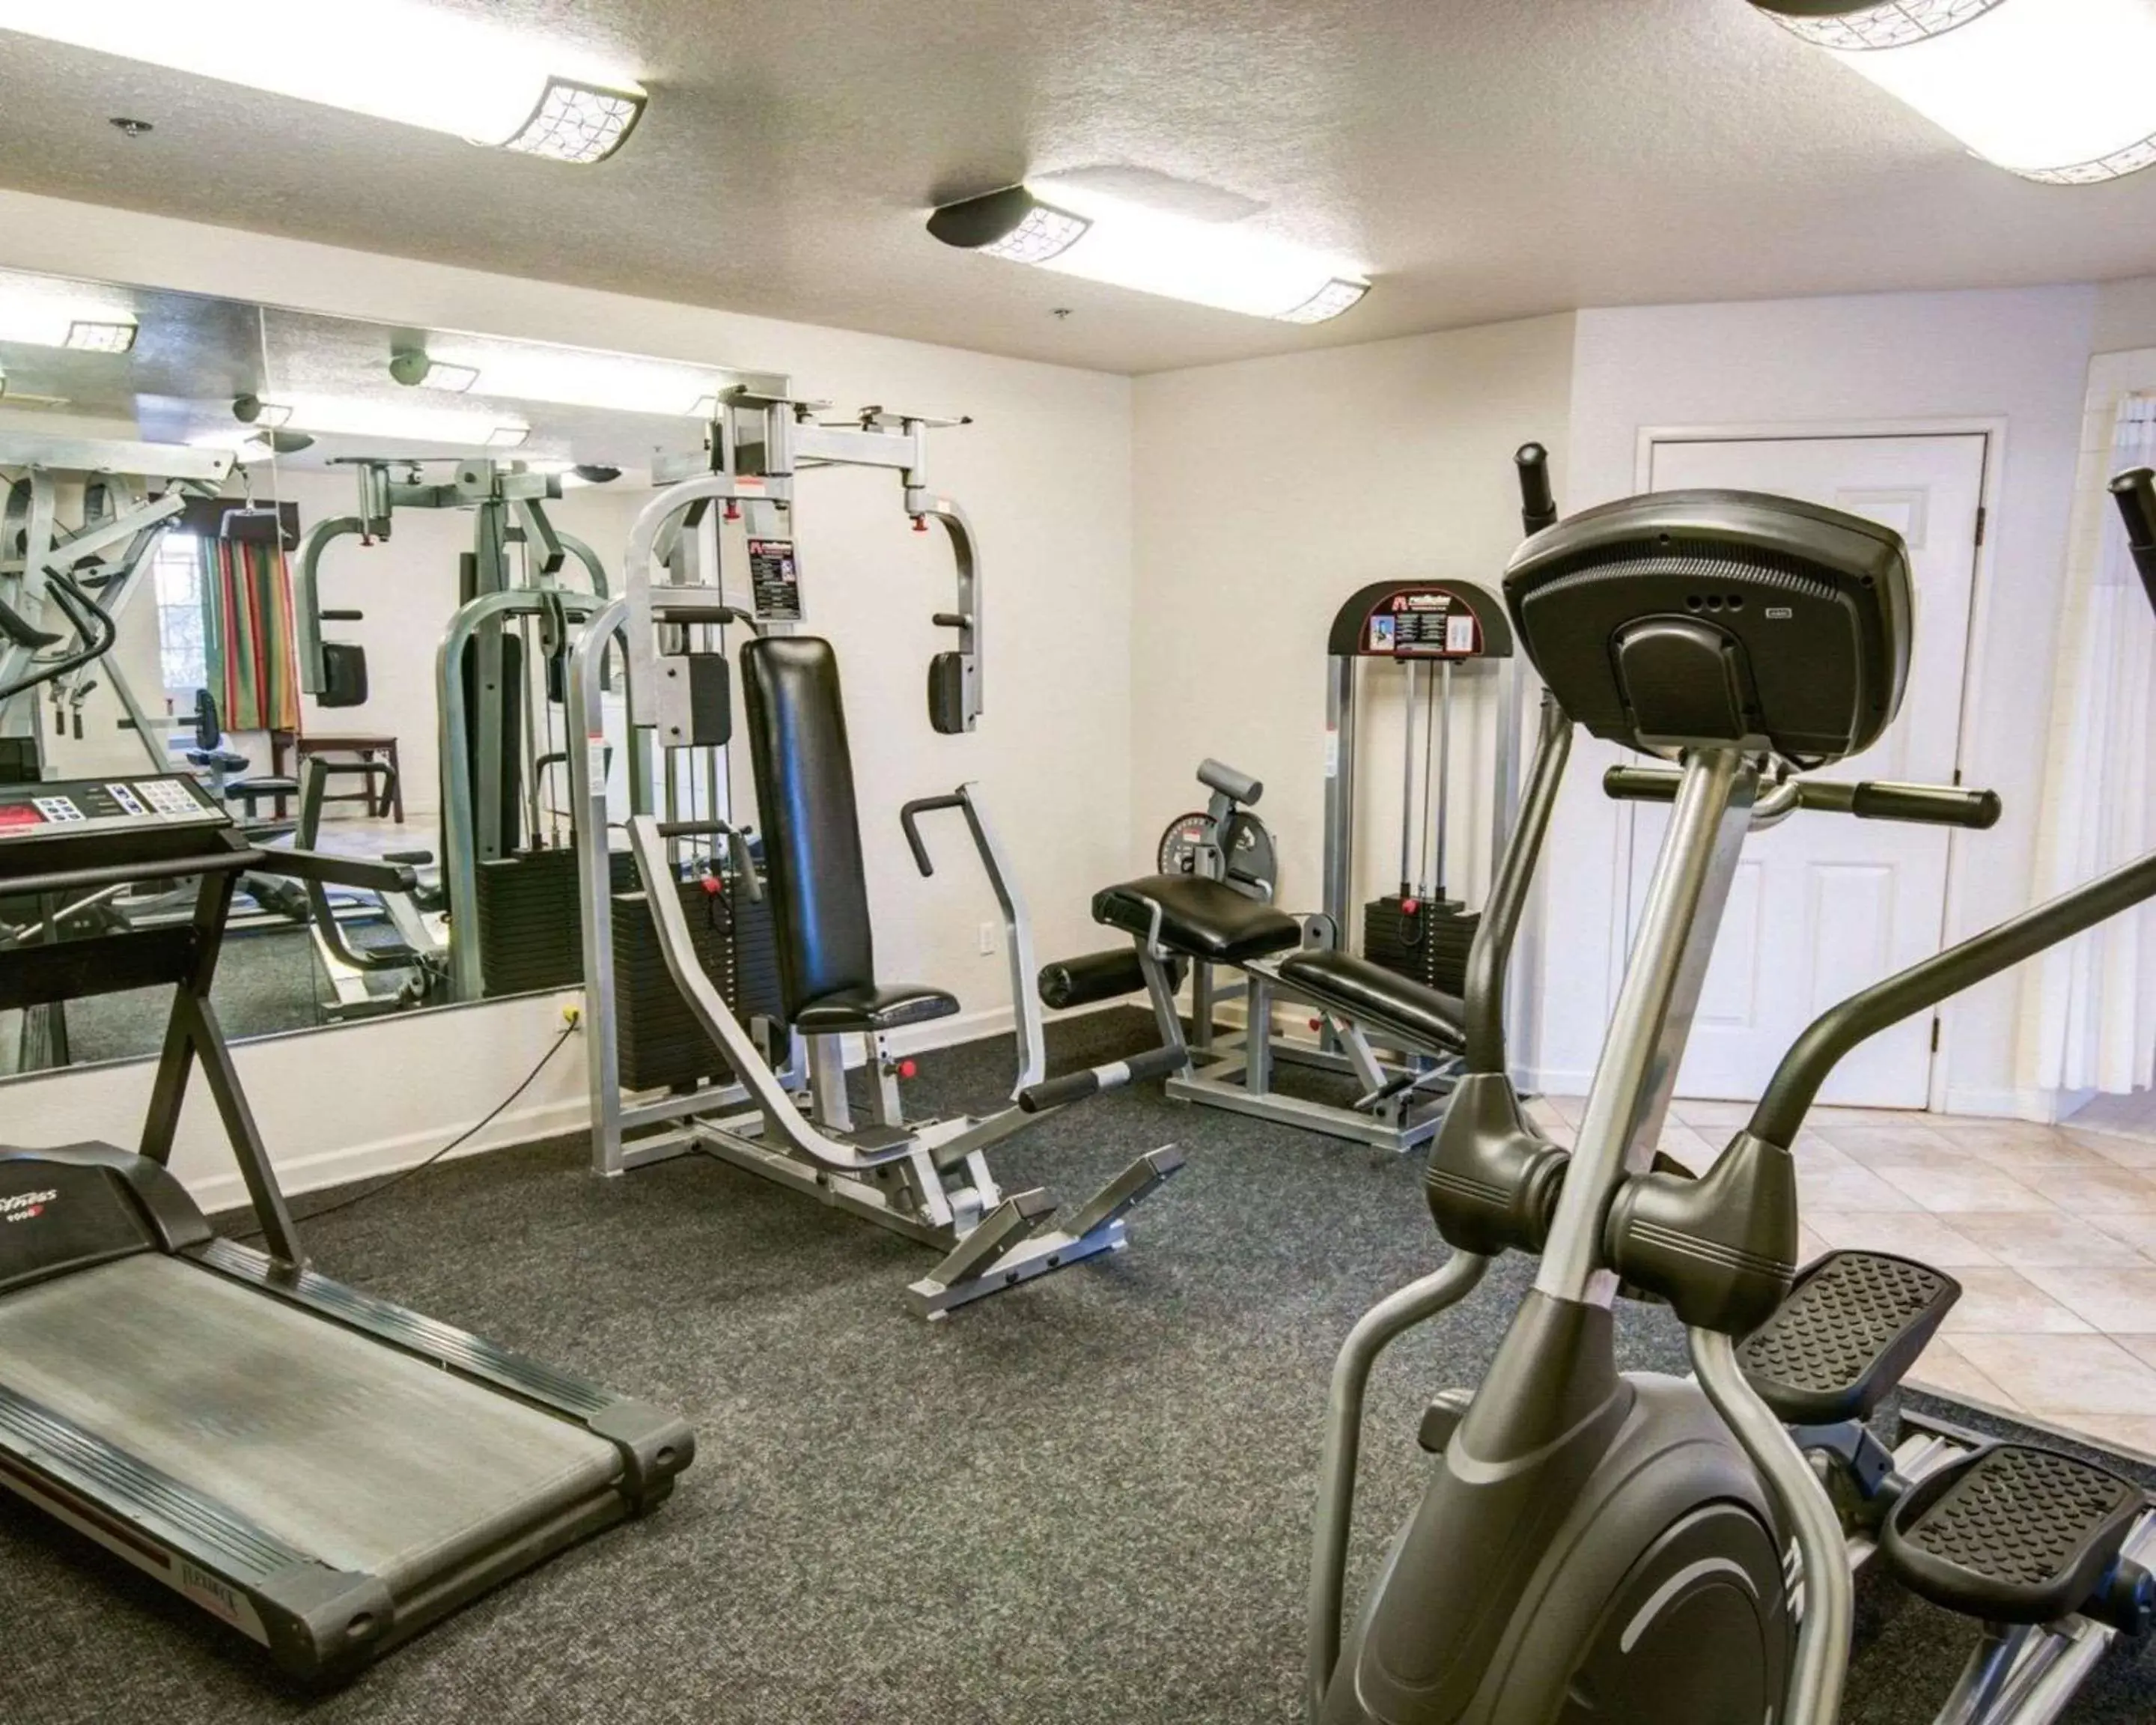 Fitness centre/facilities, Fitness Center/Facilities in Comfort Inn Redding